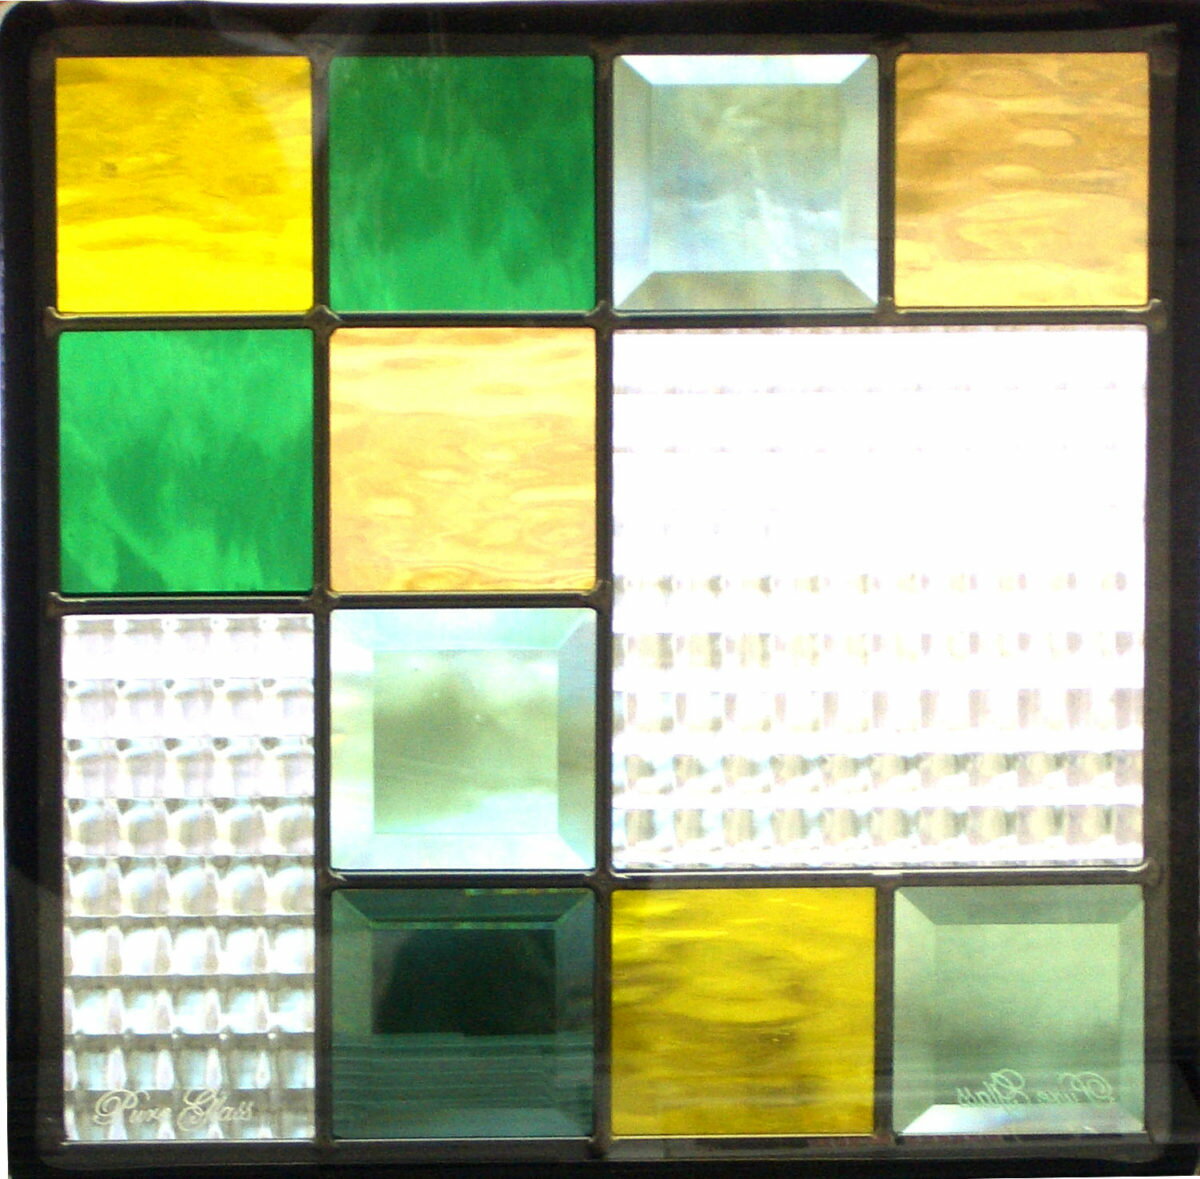 ステンドグラス ピュアグラス SH-E04 パネル 窓枠 おしゃれ アンティーク ガラス ランプ シート 照明 北欧 取り付け DIY ドア 窓 リビング 浴室 玄関 日除け 目隠し 室内 屋内 ステンドガラス 送料無料